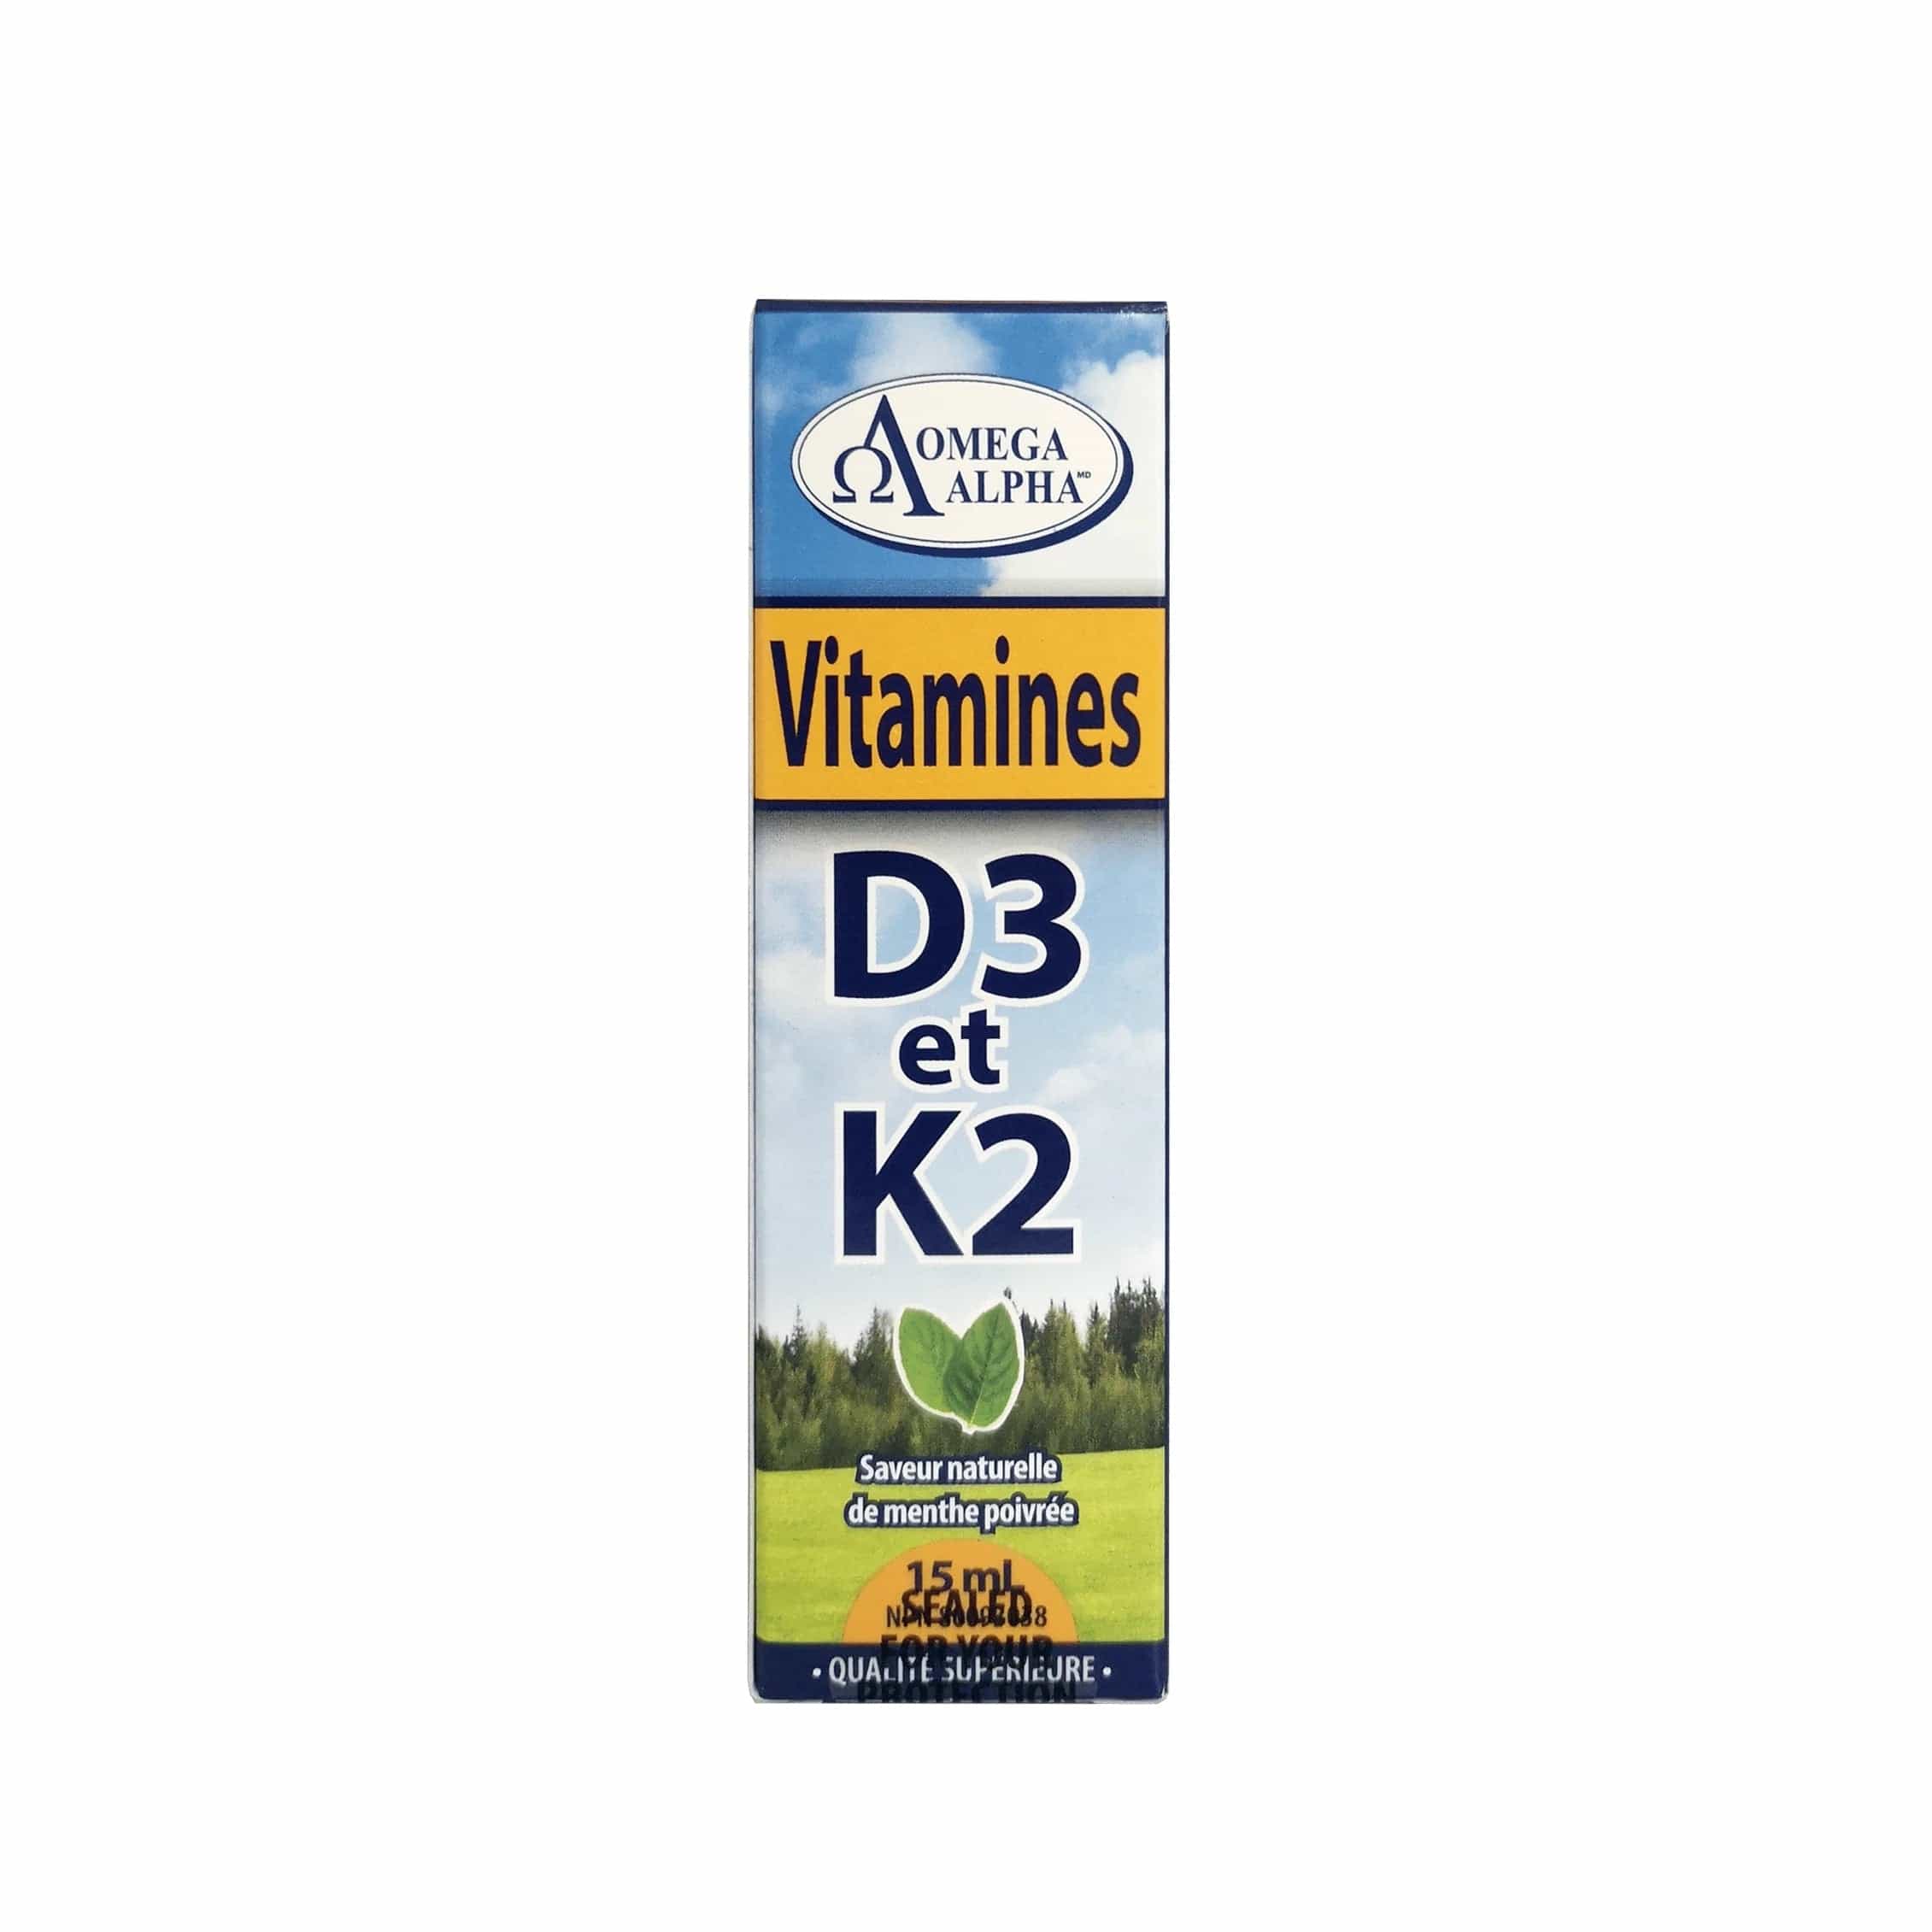 OMÉGA ALPHA PHARMATICAL suppléments Vitamine D3 et K2 (saveur menthe poivrée) 15ml